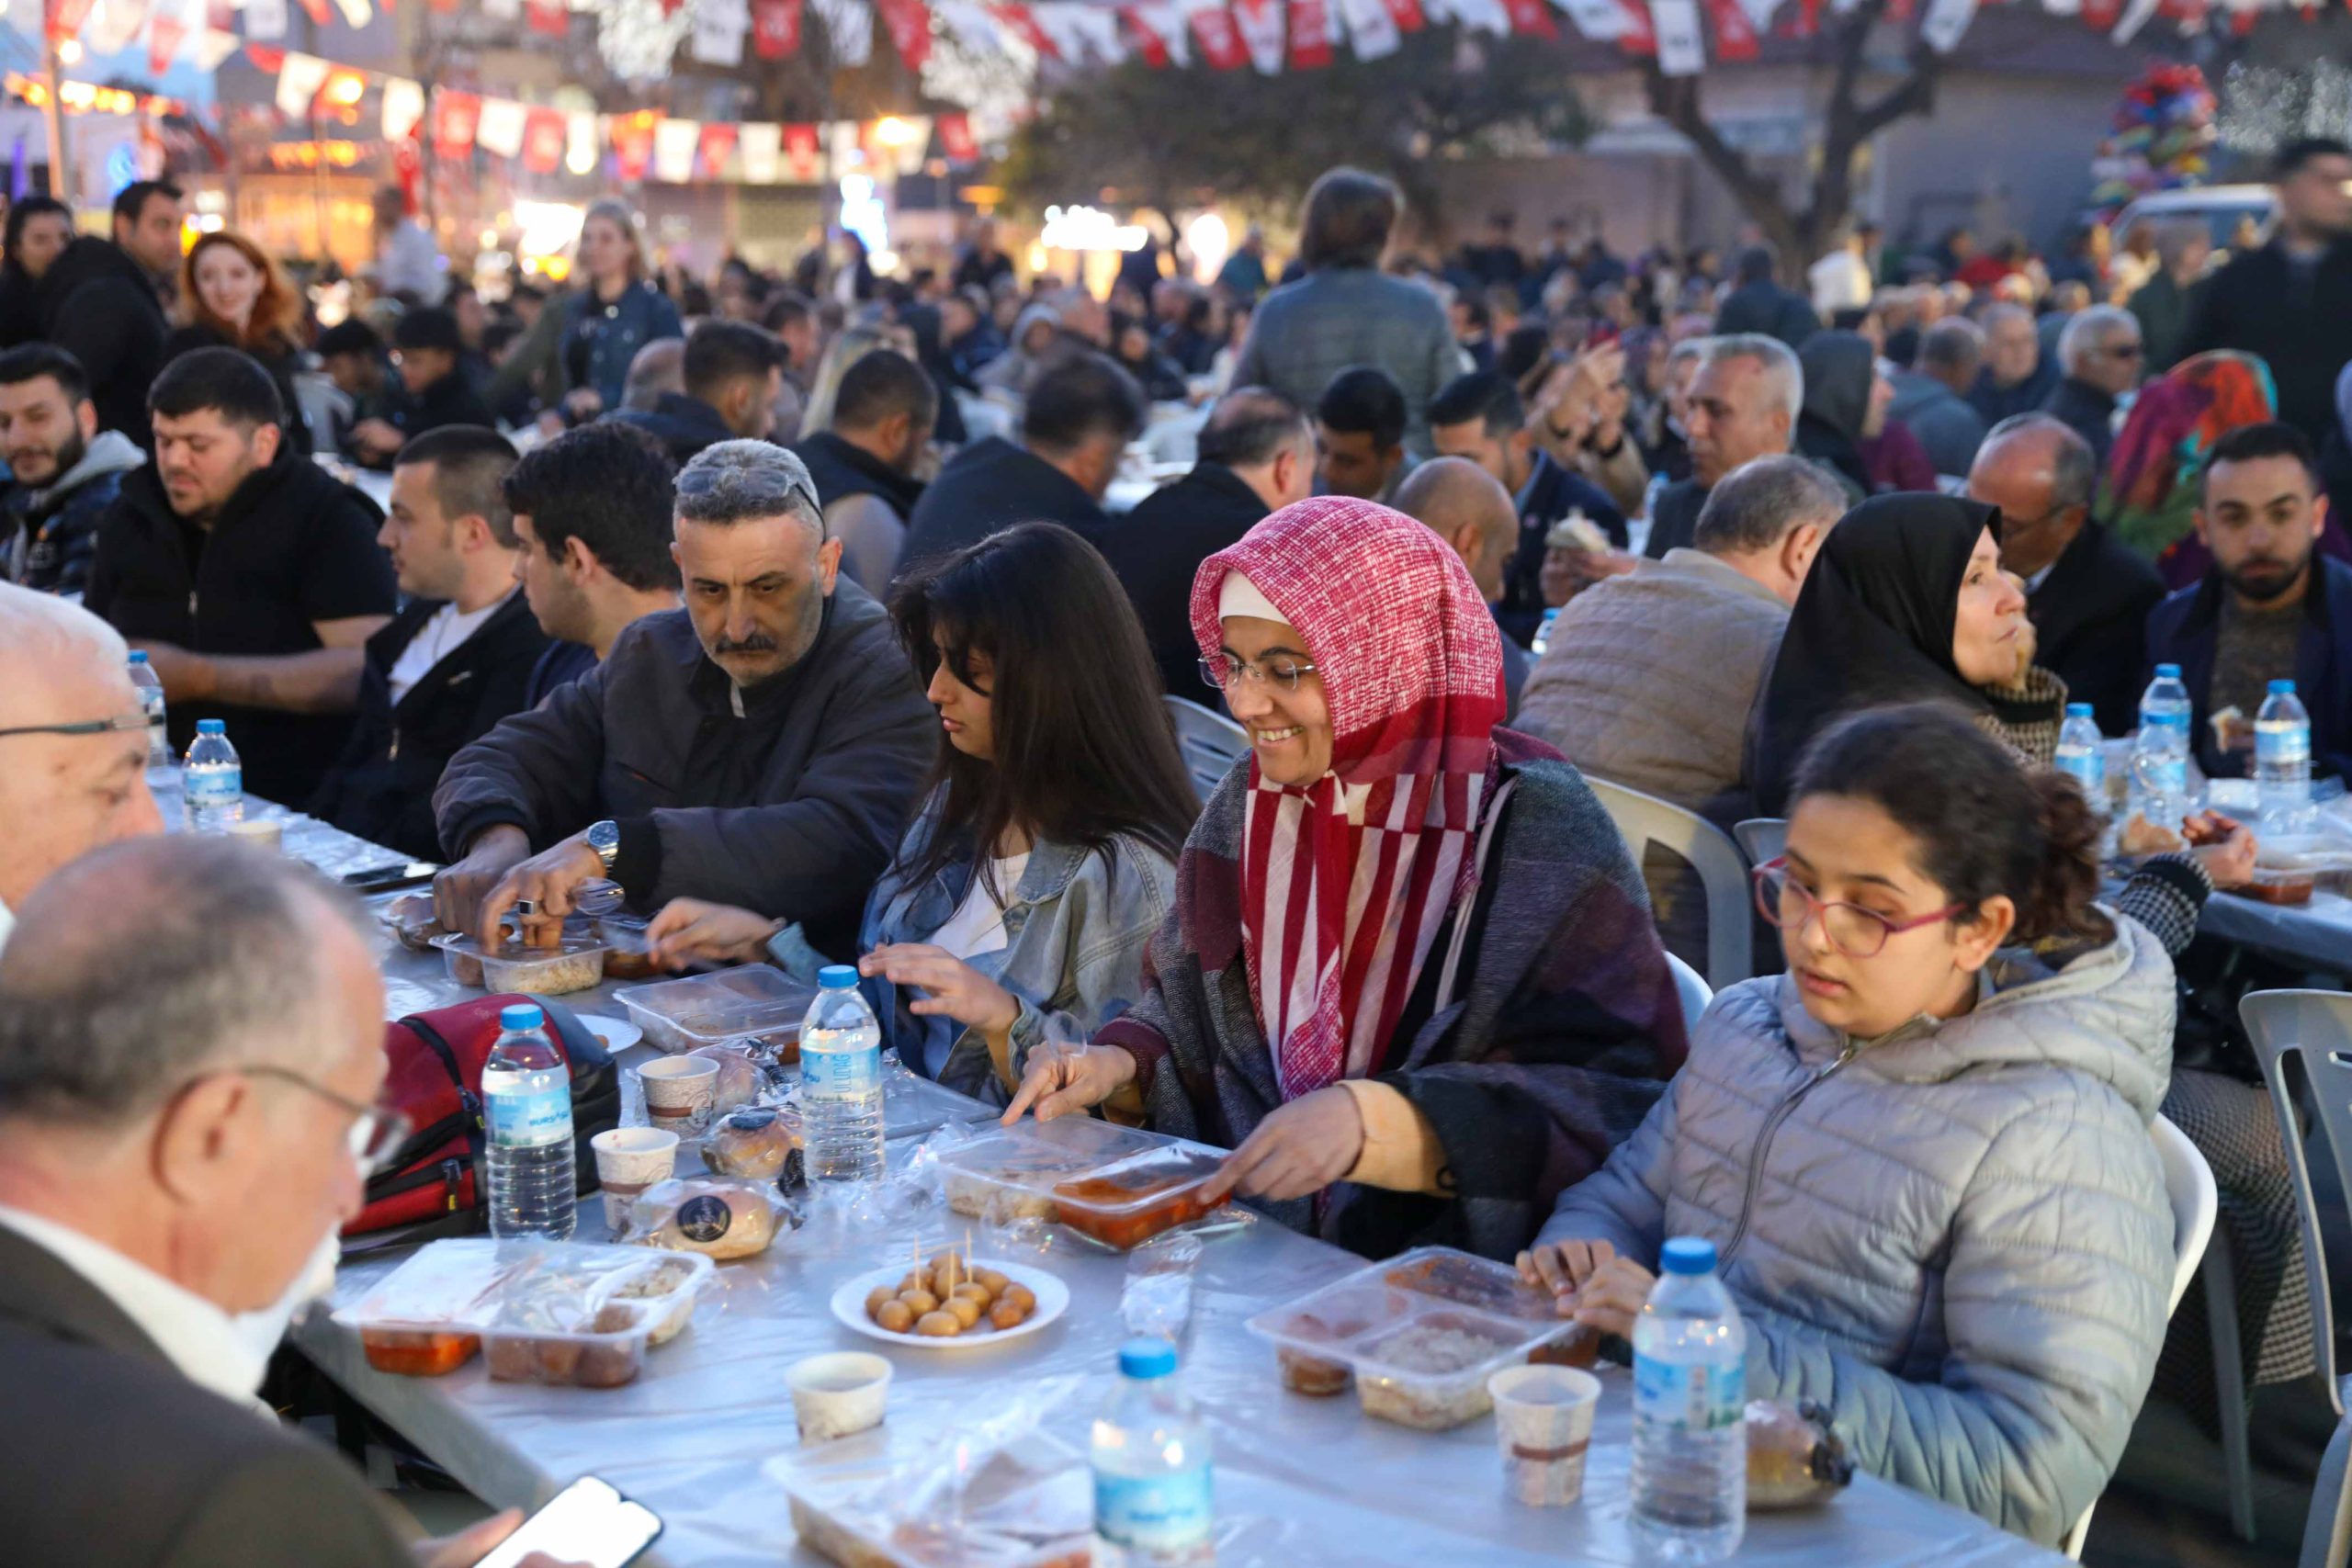 ERHAN KILIÇ BUCA Belediyesi, ramazan geleneklerini kentte yaşatmaya devam ediyor. Belediye, ramazan ayı boyunca düzenlenecek etkinliklerle ramazanın bereketini mahallelere taşıyor.